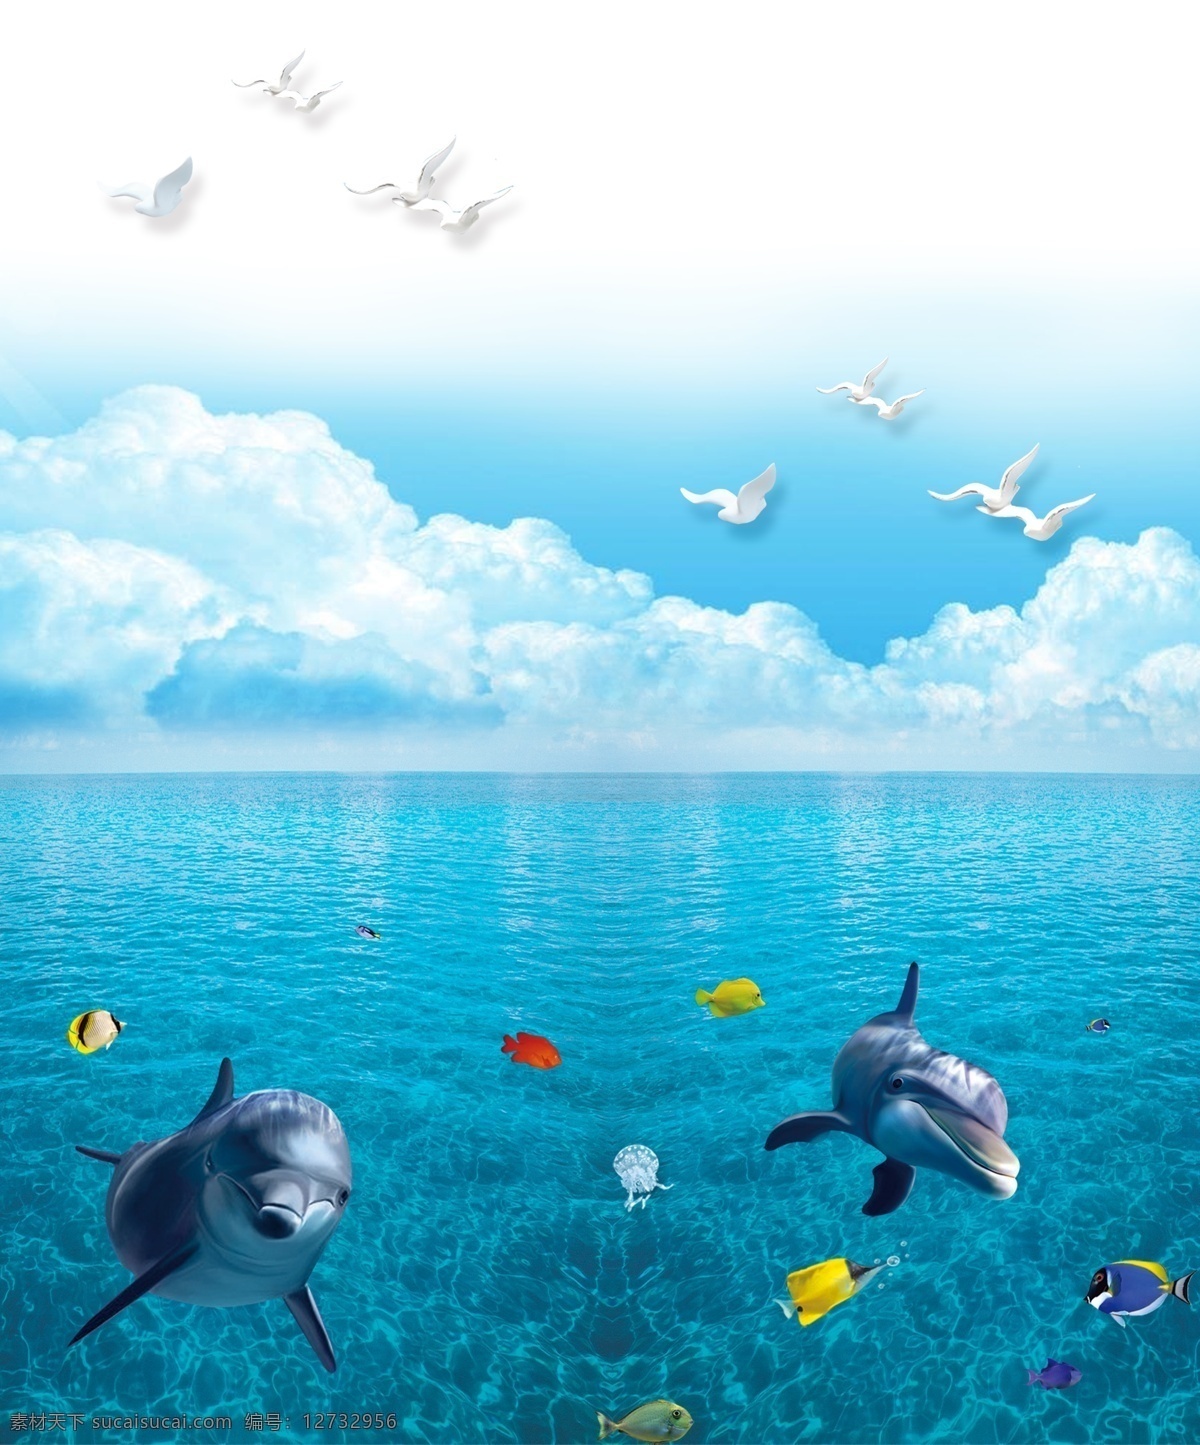 海底世界 大海 蓝天 白云 海鸥 海豚 彩色鱼 装饰画 挂画 背景画 分层 背景素材